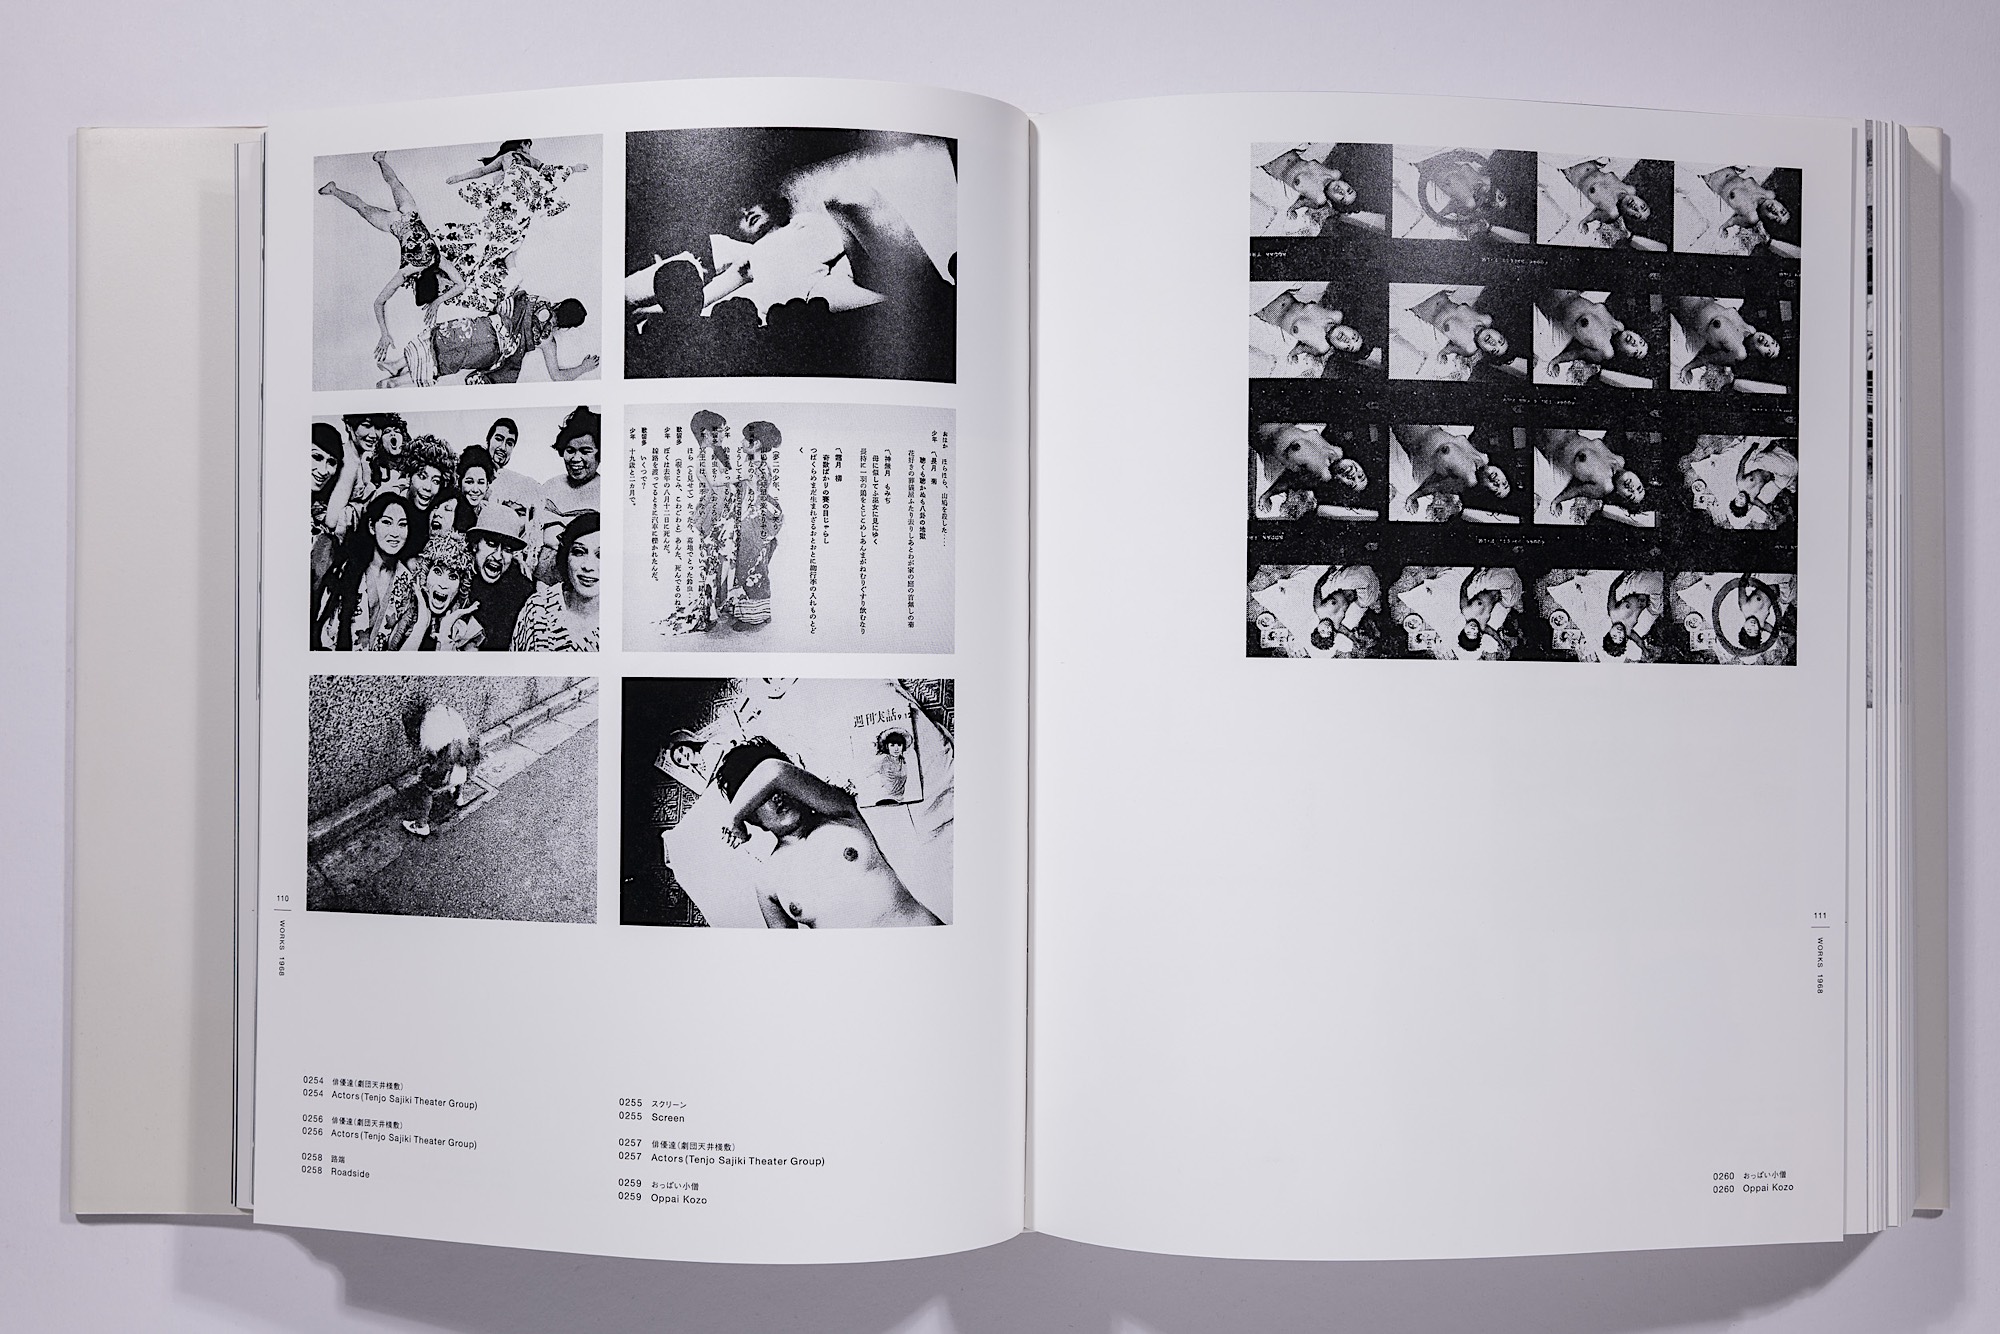 Daido Moriyama - The Complete Works of Daido Moriyama Image 57